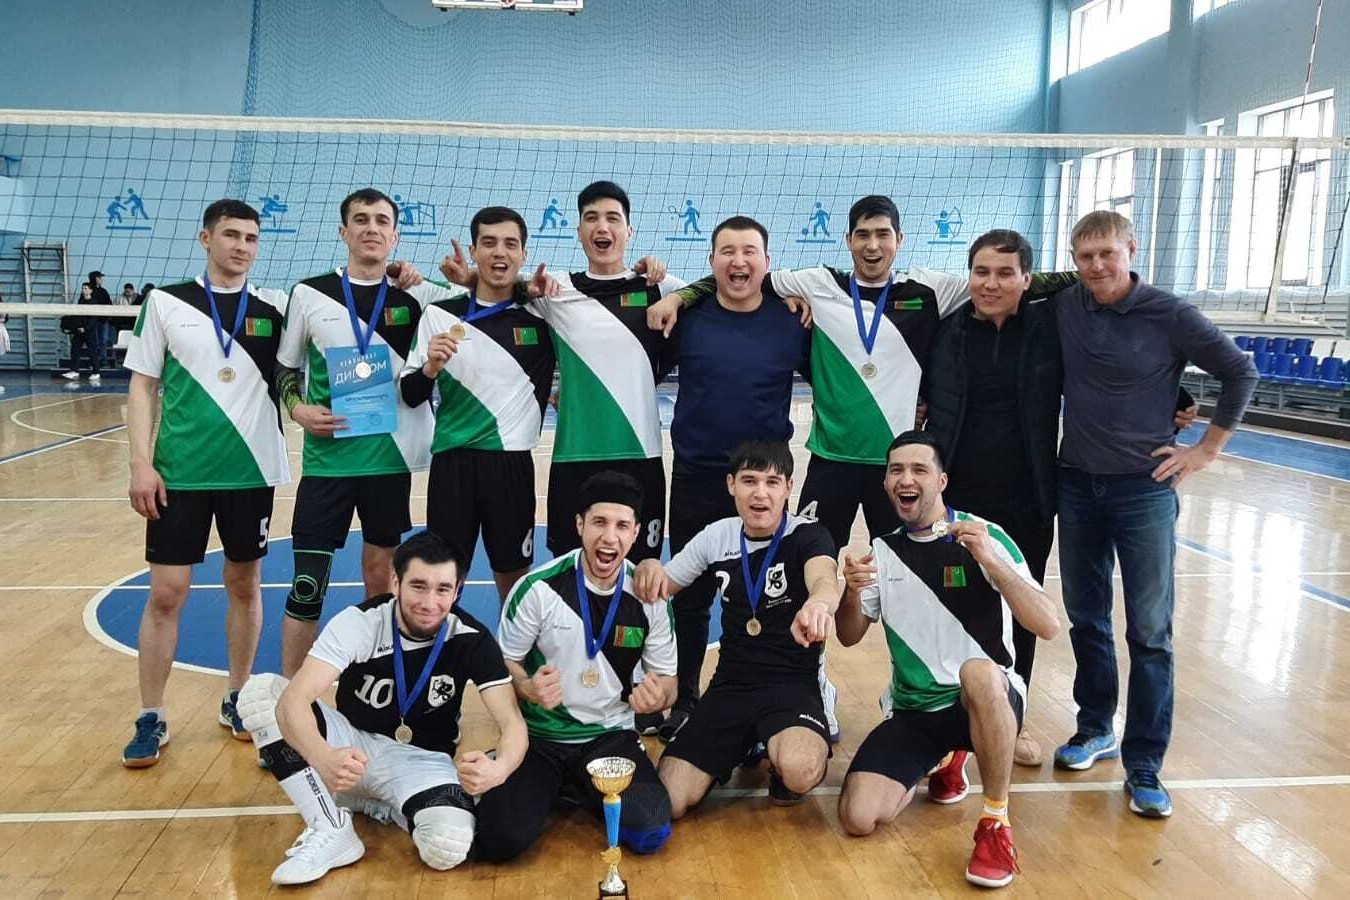 Сегодня в Казани прошли финальные игры Чемпионата ассоциации студенческих спортивных клубов по волейболу среди мужчин 